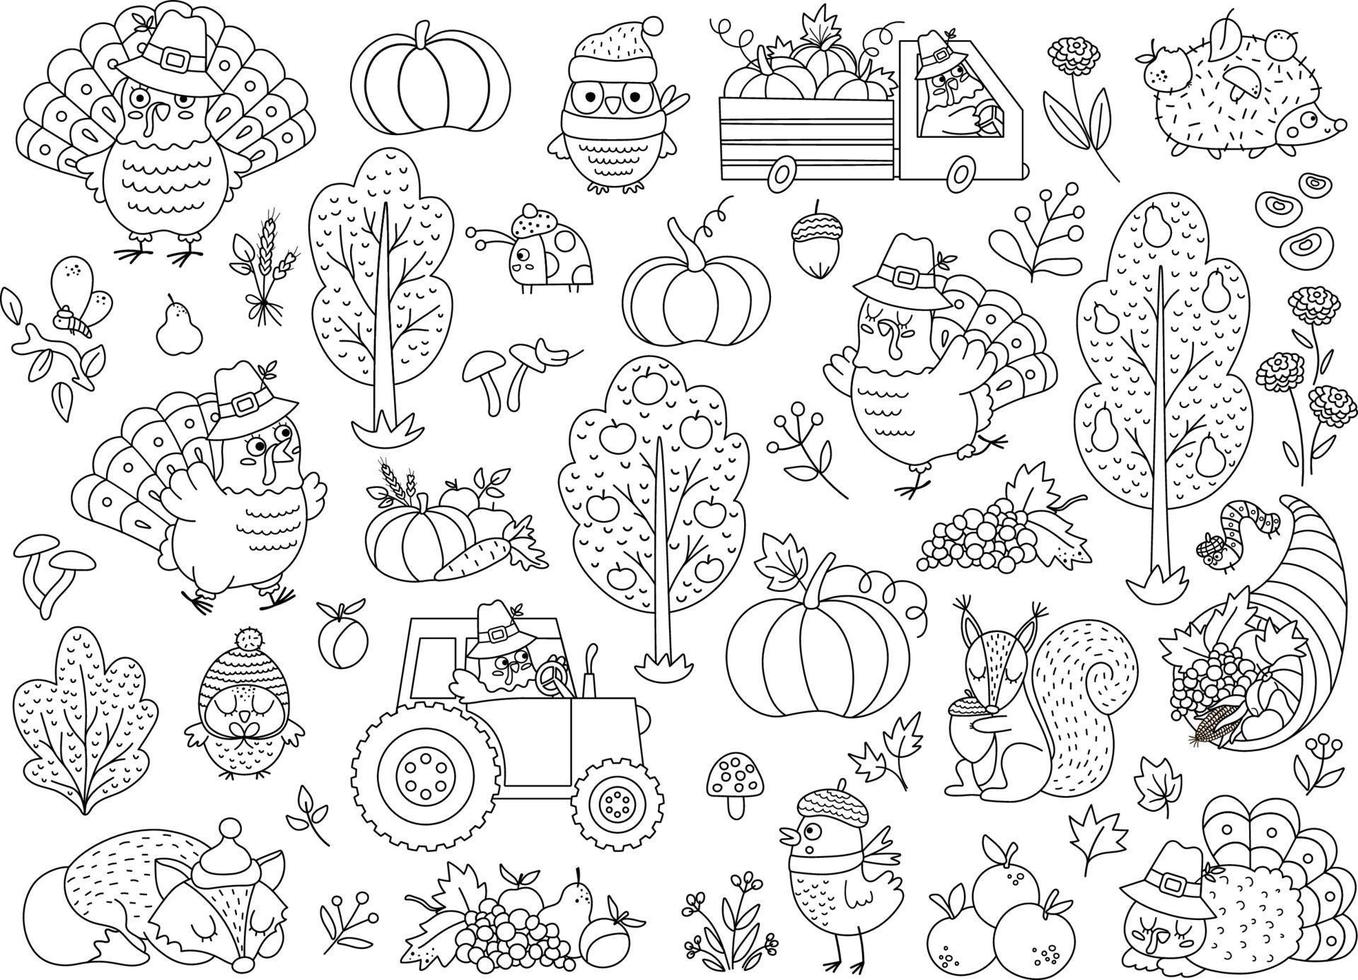 Vektor schwarz-weiß Thanksgiving-Elemente gesetzt. Herbstlinie Icons Sammlung mit Truthahn, Tiere, Ernte, Füllhorn, Kürbisse, Bäume. Herbstferien-Umrisspaket mit Auto, Traktor, Obst